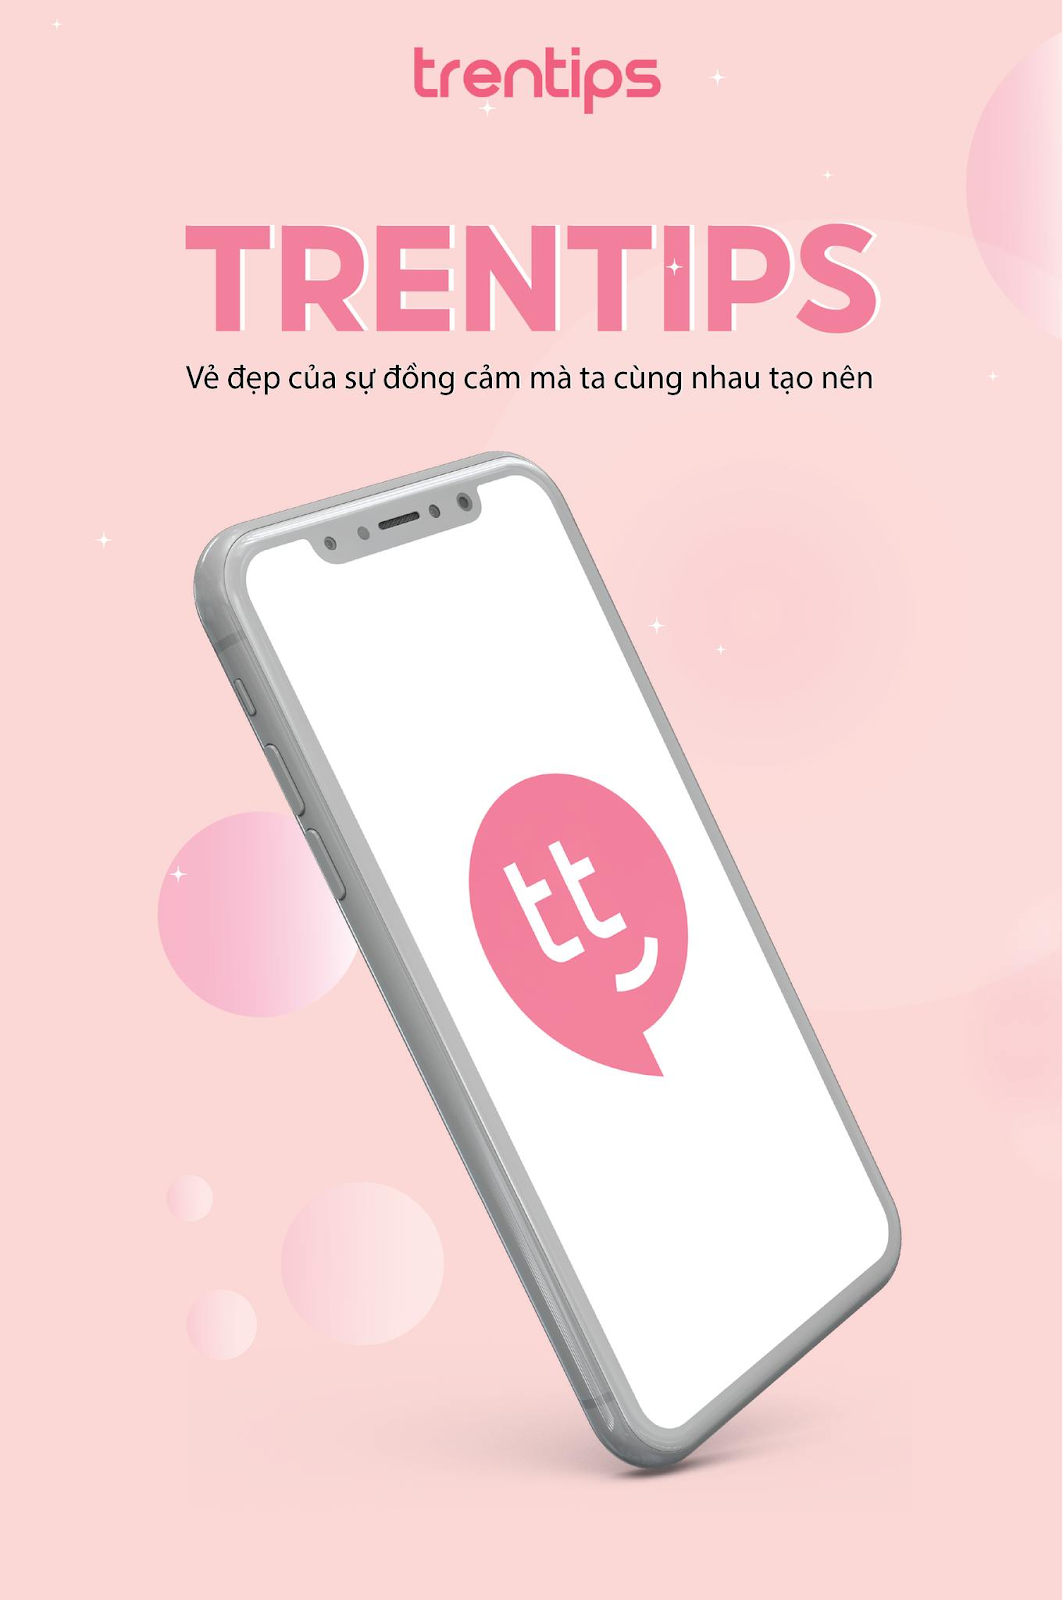 appreview - Mẹo vặt làm đẹp: Đánh giá app Trentips. Có nên tải Trentips về điện thoại không? 25k6bUrMsU1UtaOB4aCuxl5mnj6NpMf2ZTeJfk5vzvX1x4opZ0YksX4UuyV4HOo7H-mOTQpZh8xepqfmPT_v5x3zF3oCuk7UUT6L2x68KShSarJy3XAYSXKw2aSYklqWg6msyHzq5yvkRublxOgnyeTSp8yf5WQrY4vVNuXgTv6zbBysAop6zjsSpA